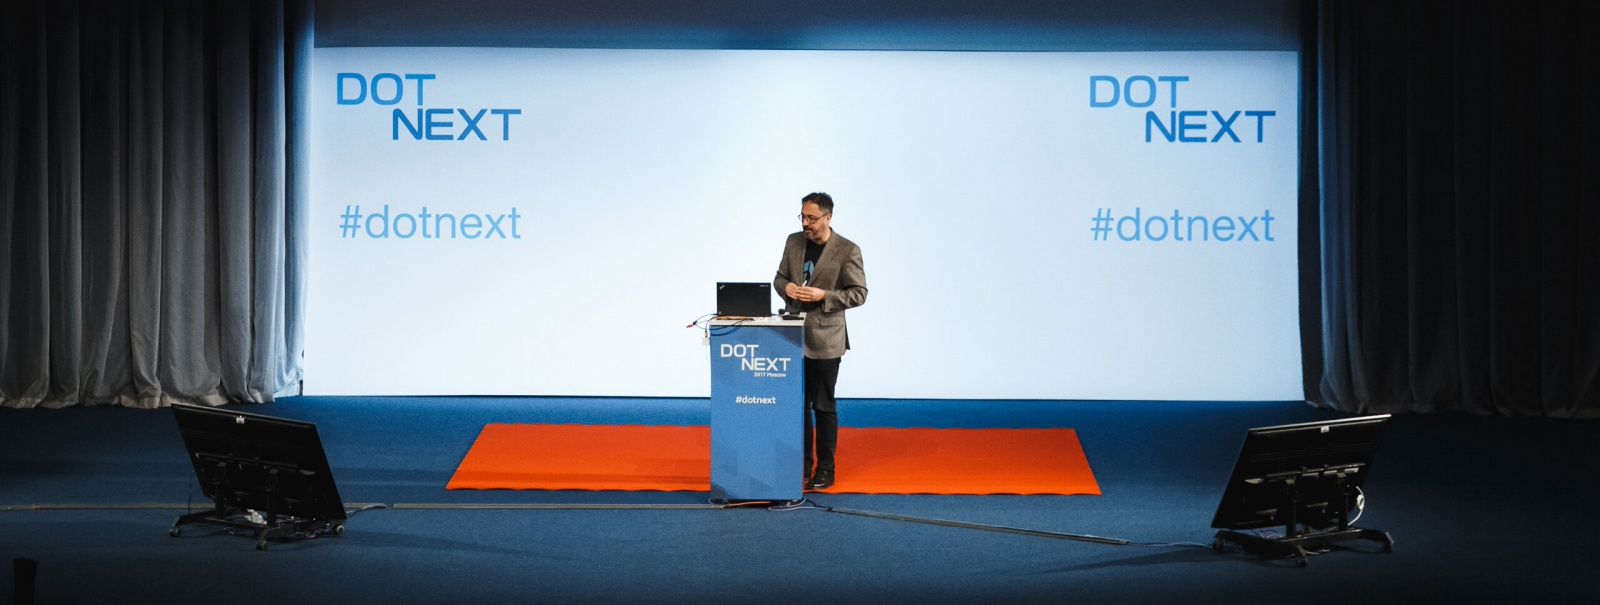 Обзор программы конференции DotNext 2018 Piter - 1